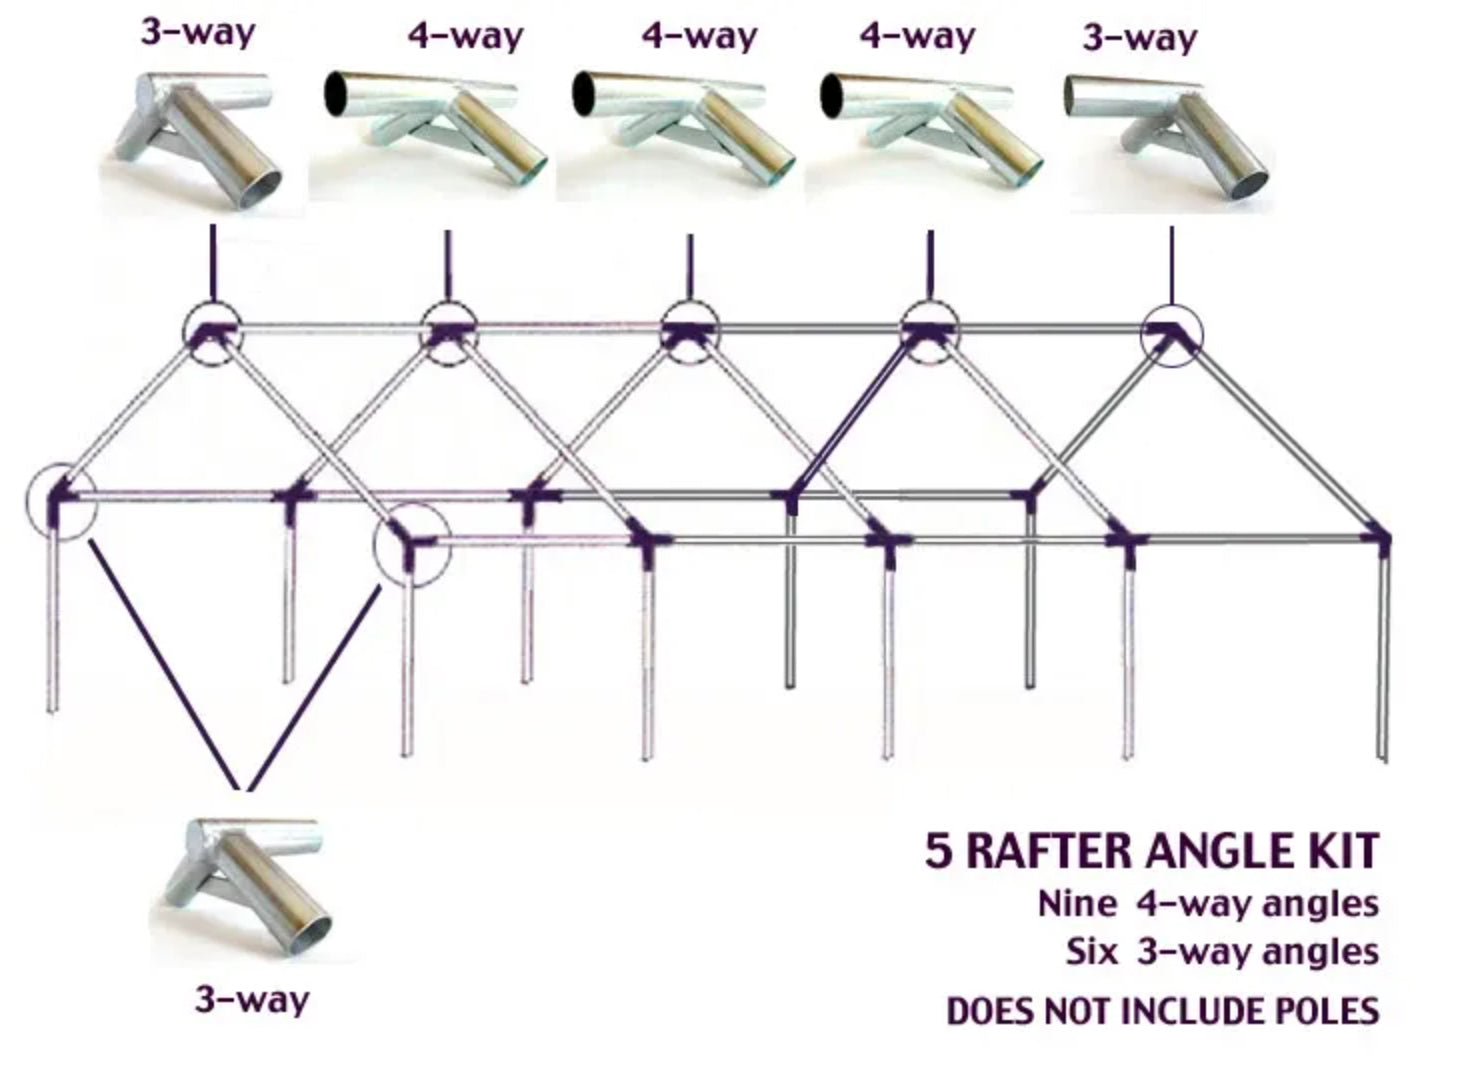 5 Rafter Angle Kit